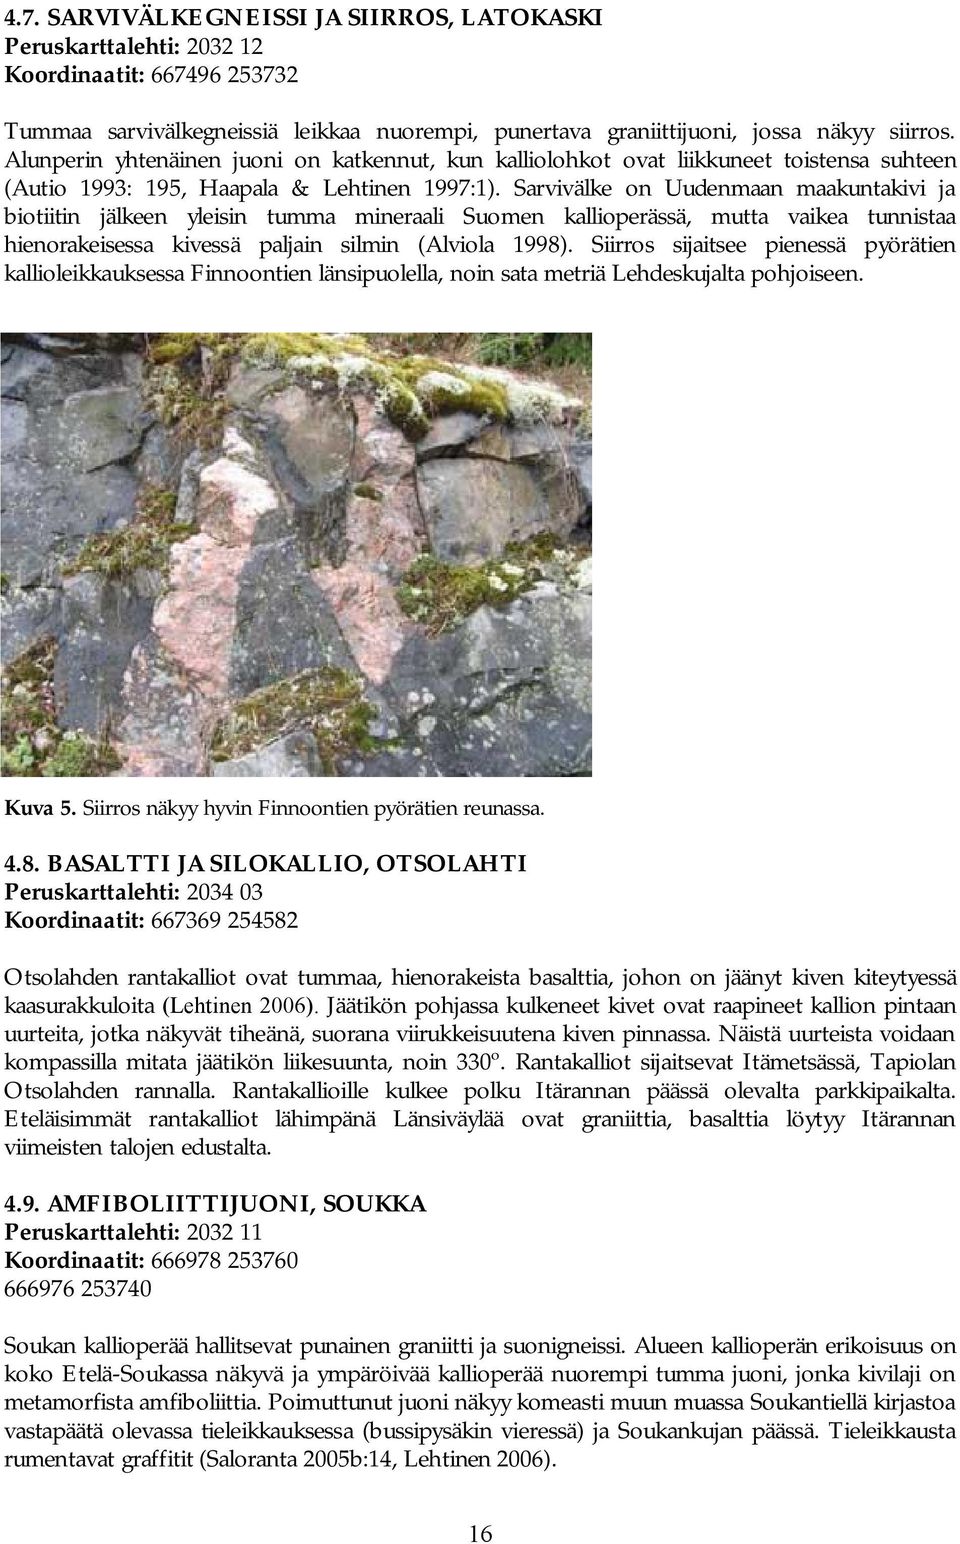 Sarvivälke on Uudenmaan maakuntakivi ja biotiitin jälkeen yleisin tumma mineraali Suomen kallioperässä, mutta vaikea tunnistaa hienorakeisessa kivessä paljain silmin (Alviola 1998).